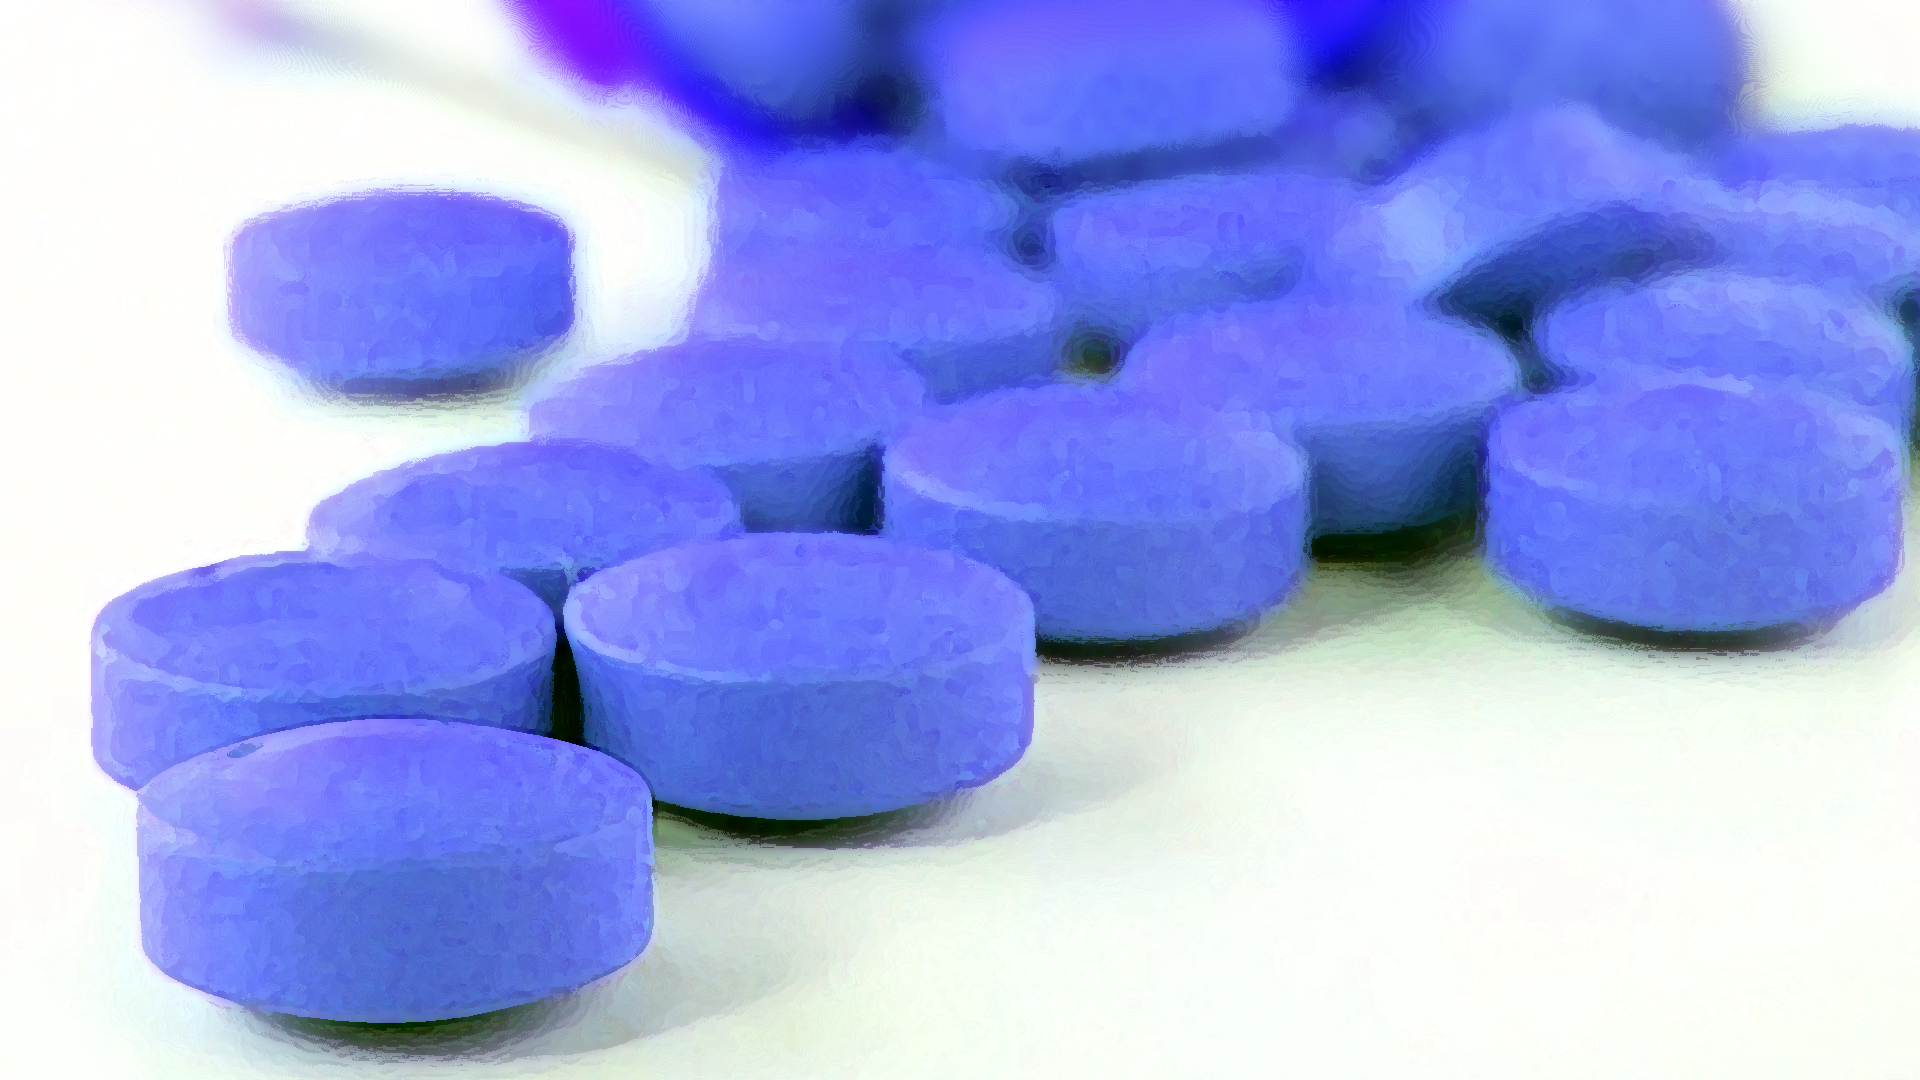 alvaro quiros recommends blue pill men pic